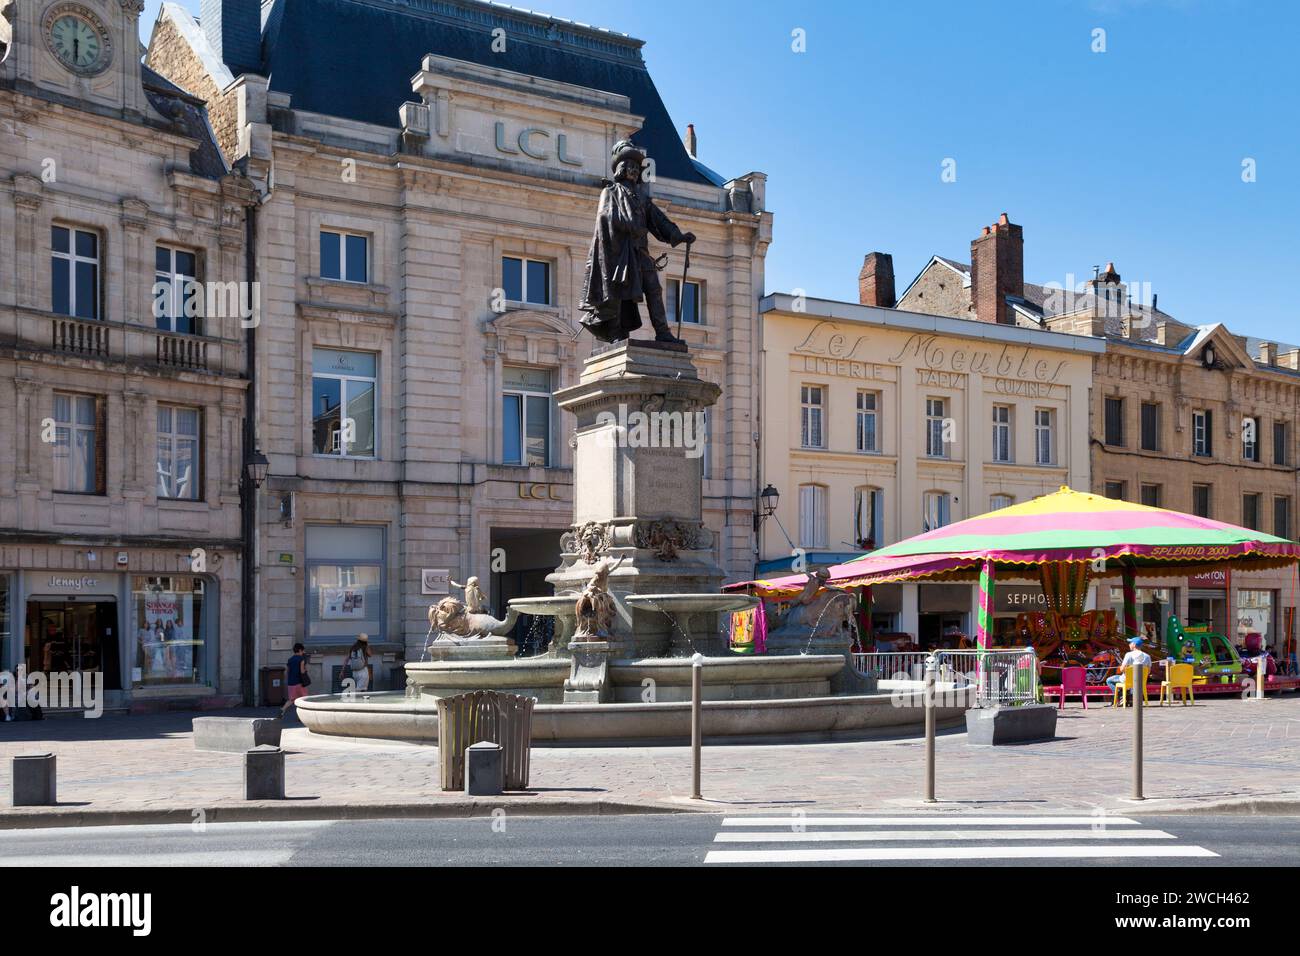 Charleville-Mézières, France - juin 23 2020 : la fontaine Charles de Gonzague créée par le sculpteur collé est inaugurée en 1899. Banque D'Images